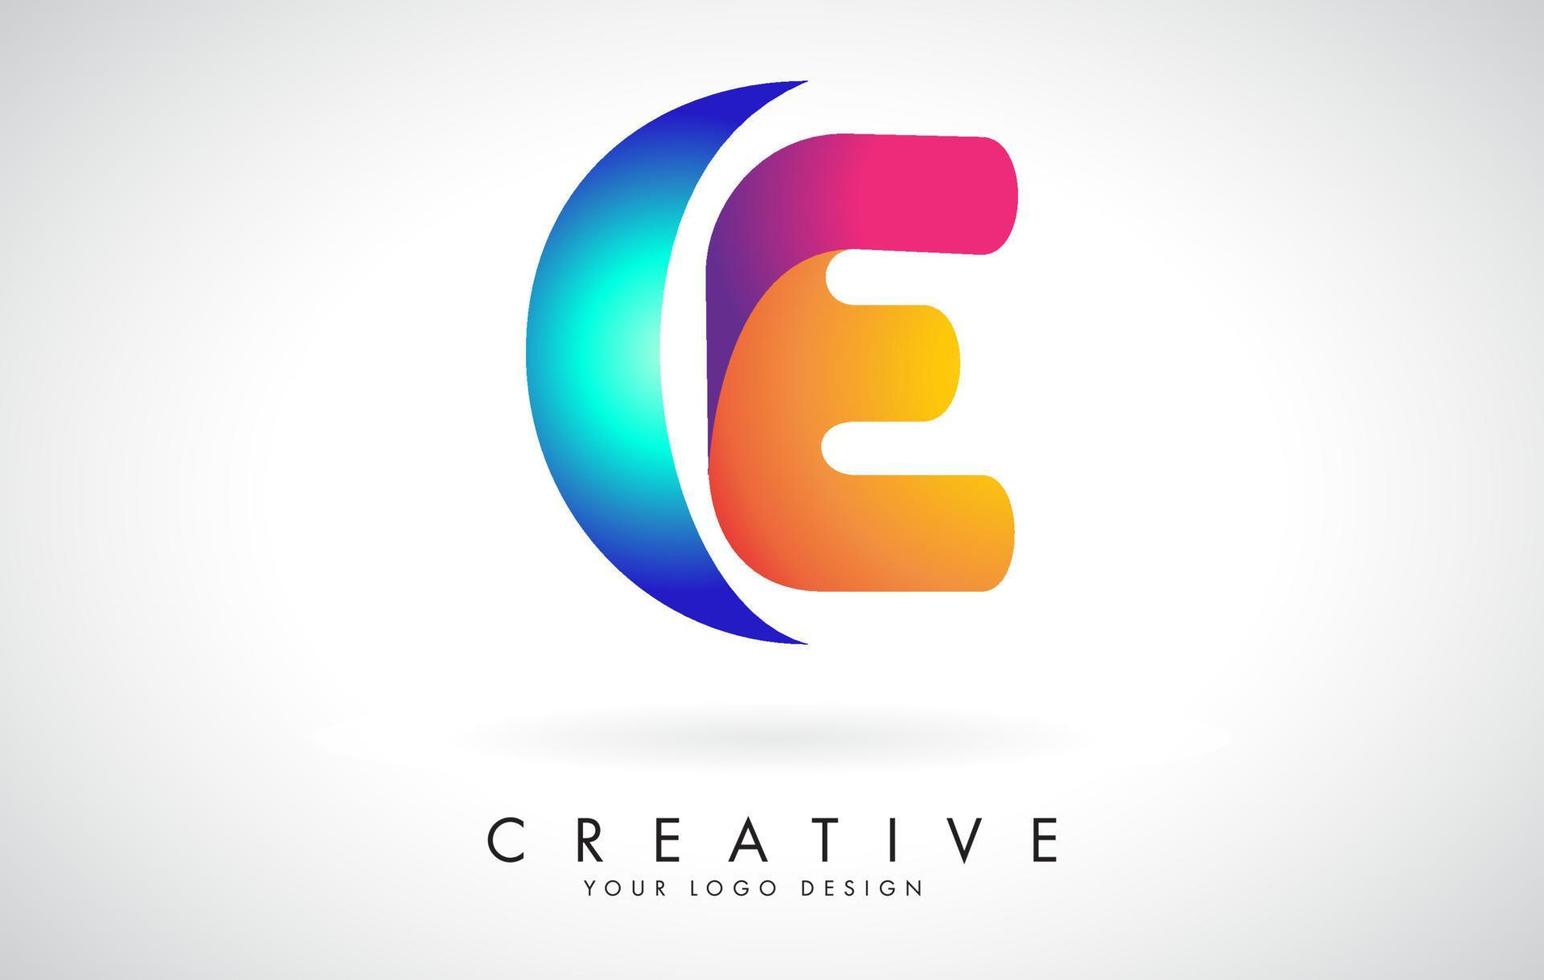 design de logotipo e letra criativa azul e rosa com pontos. entretenimento corporativo amigável, mídia, tecnologia, design de vetor de negócios digitais com gotas.